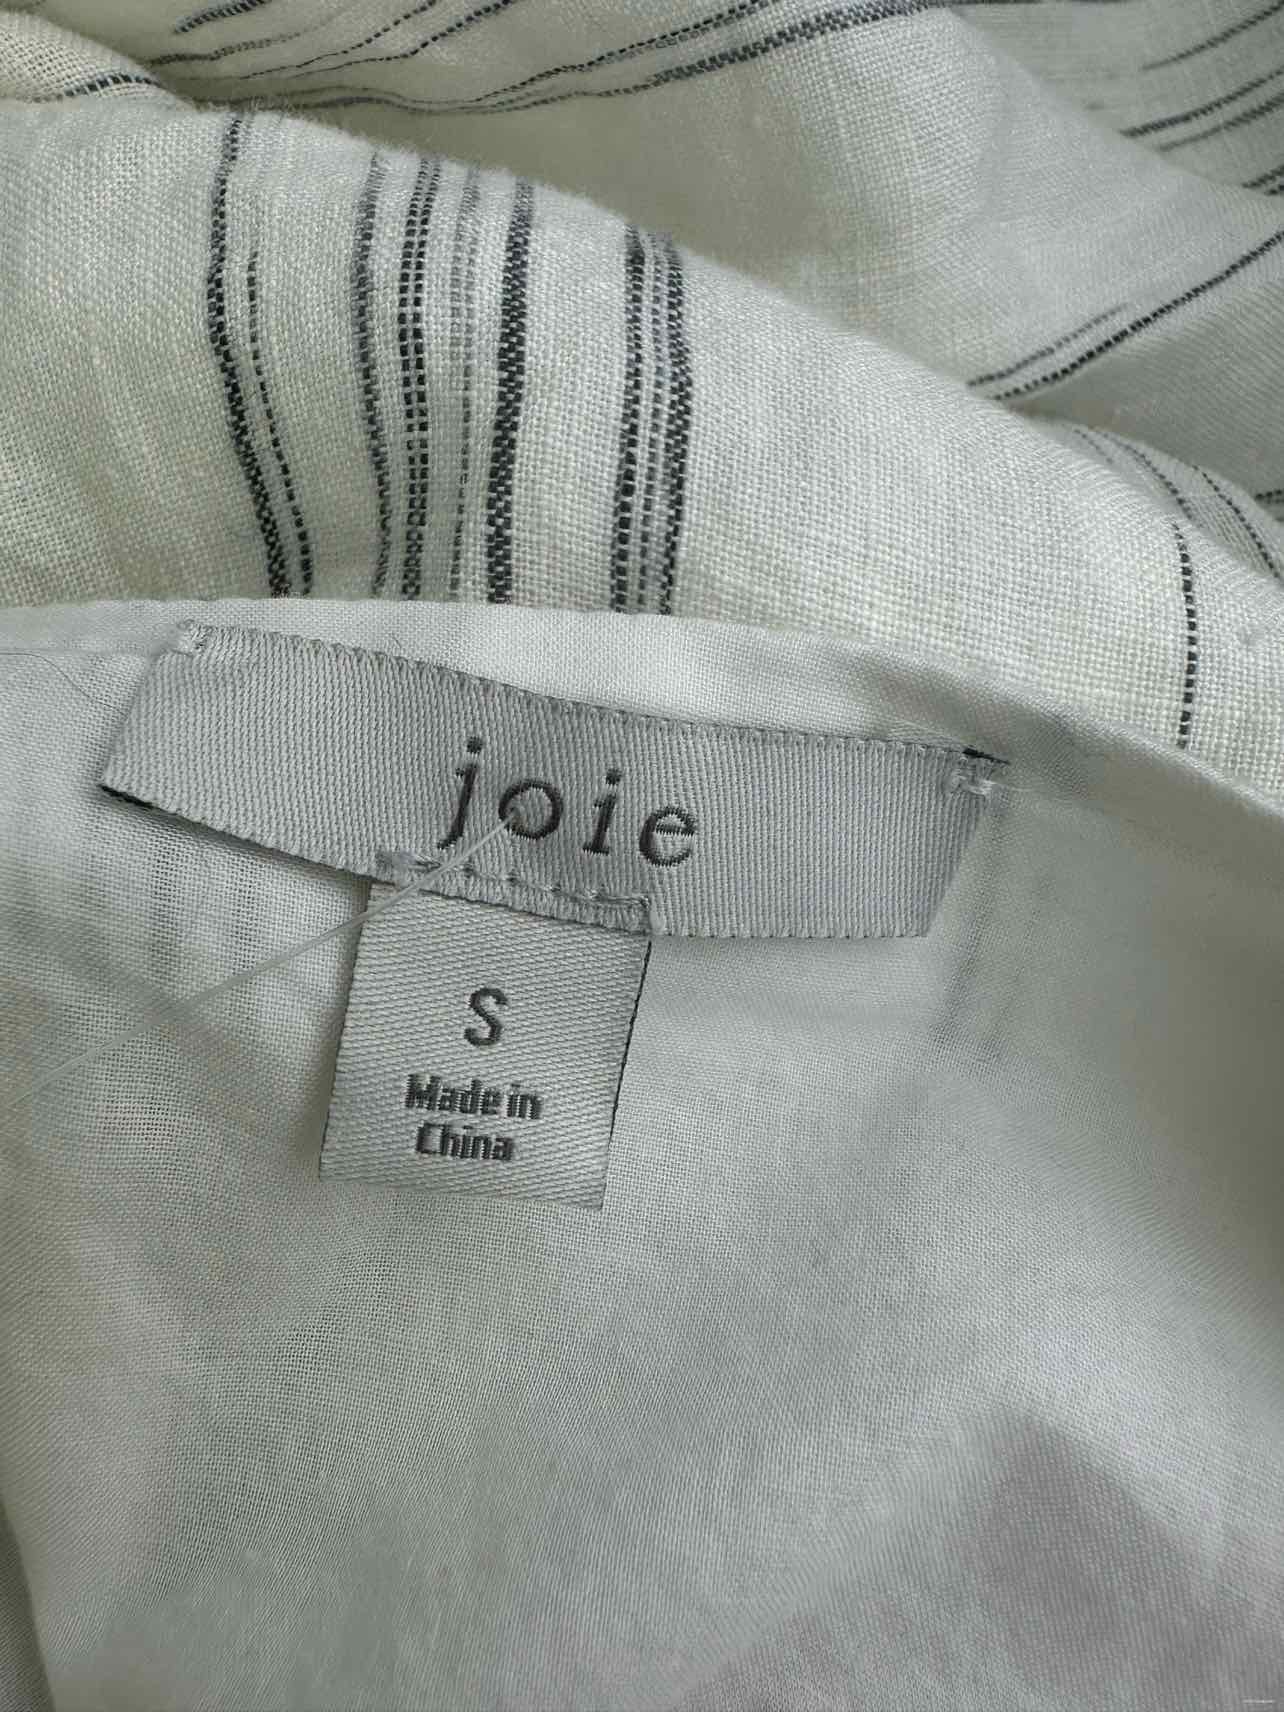 joie White Striped Linen Midi Dress Size S